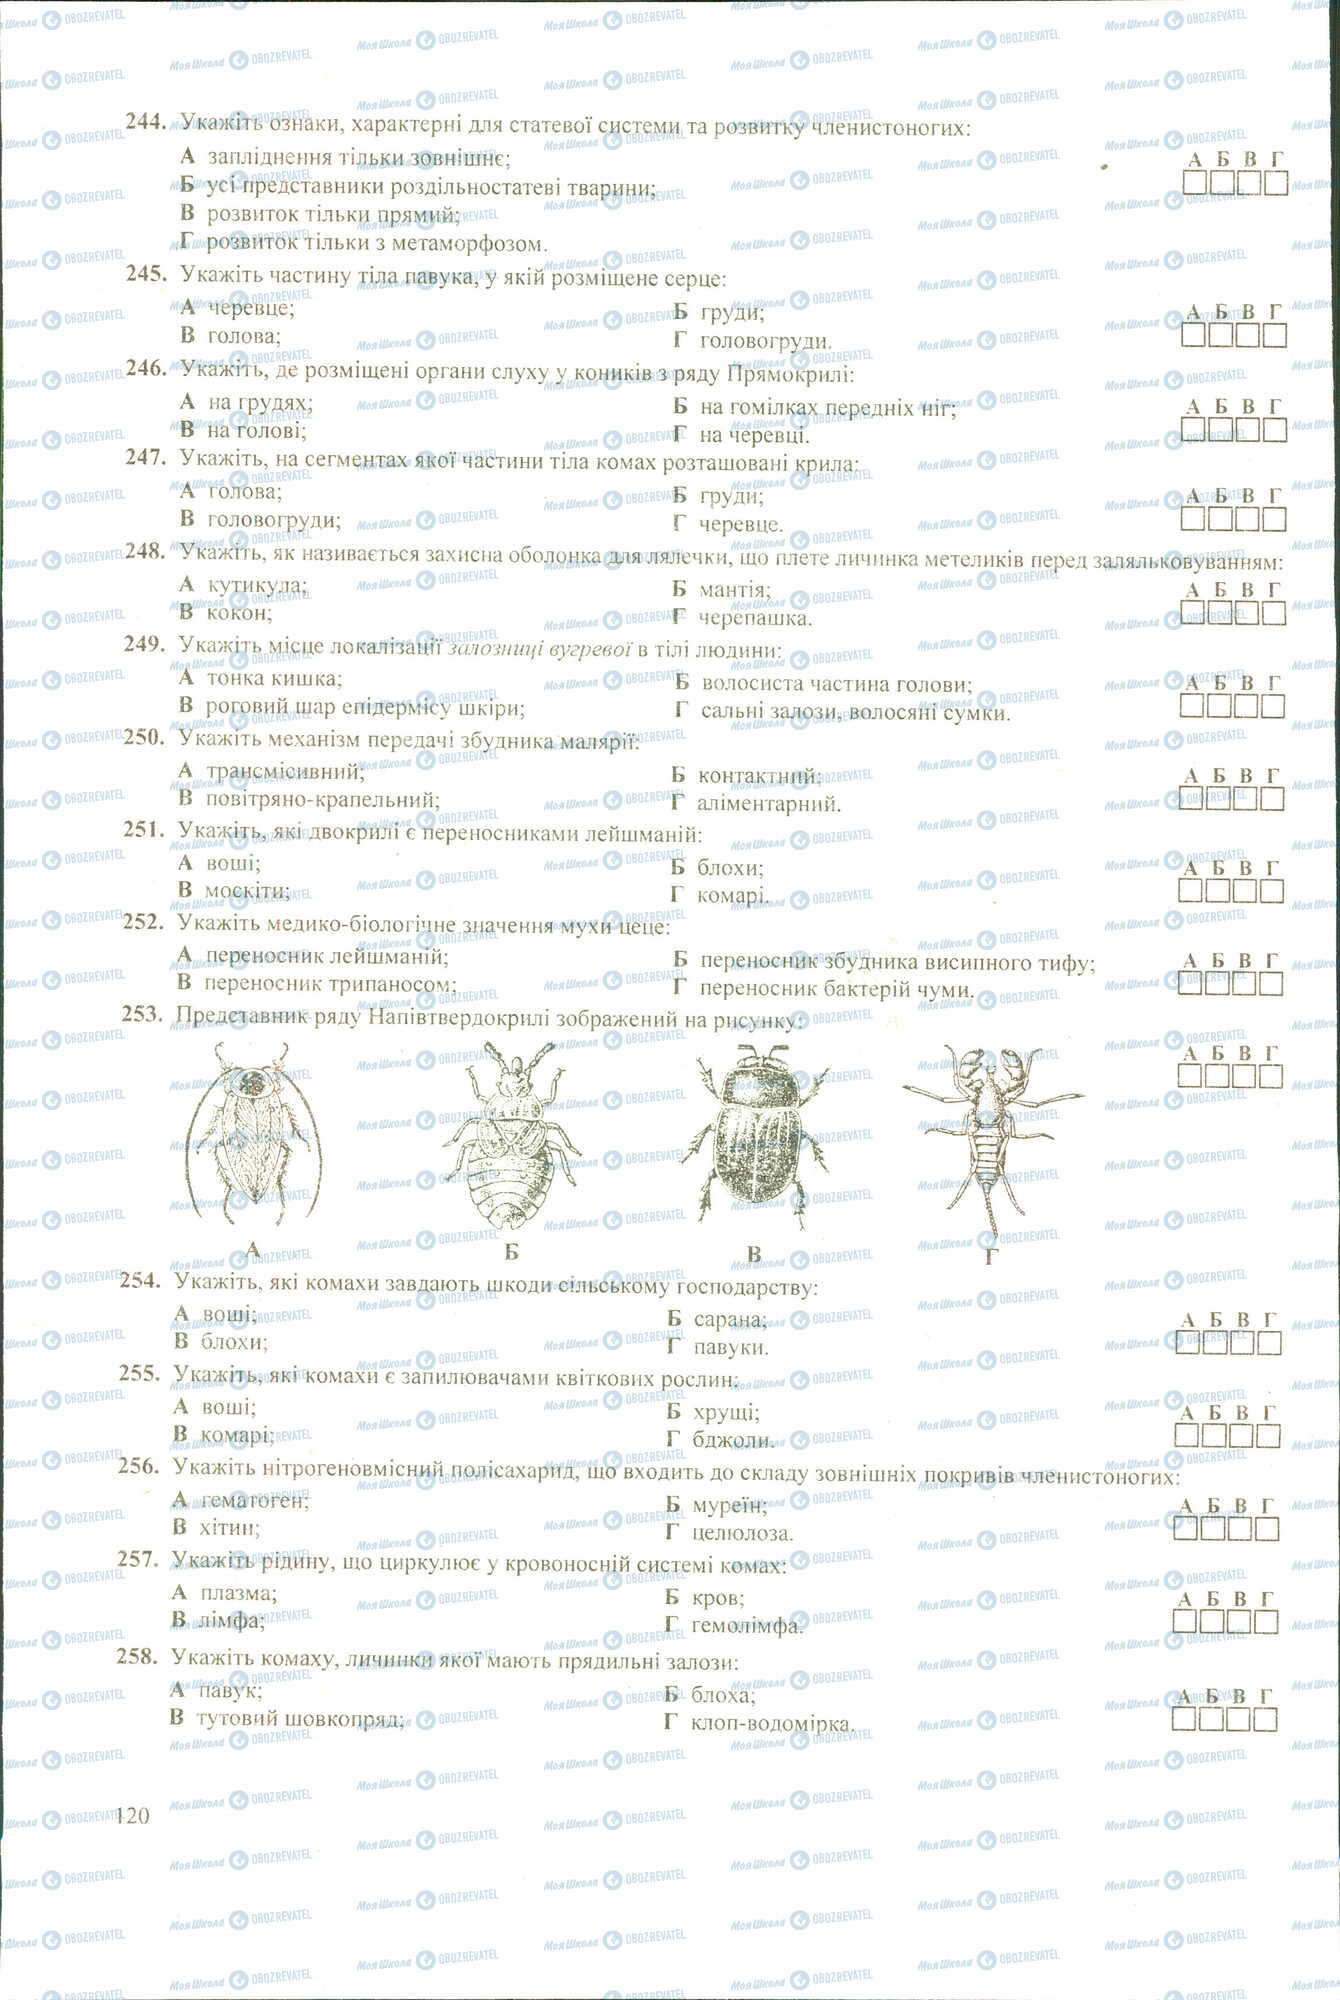 ЗНО Биология 11 класс страница 244-258